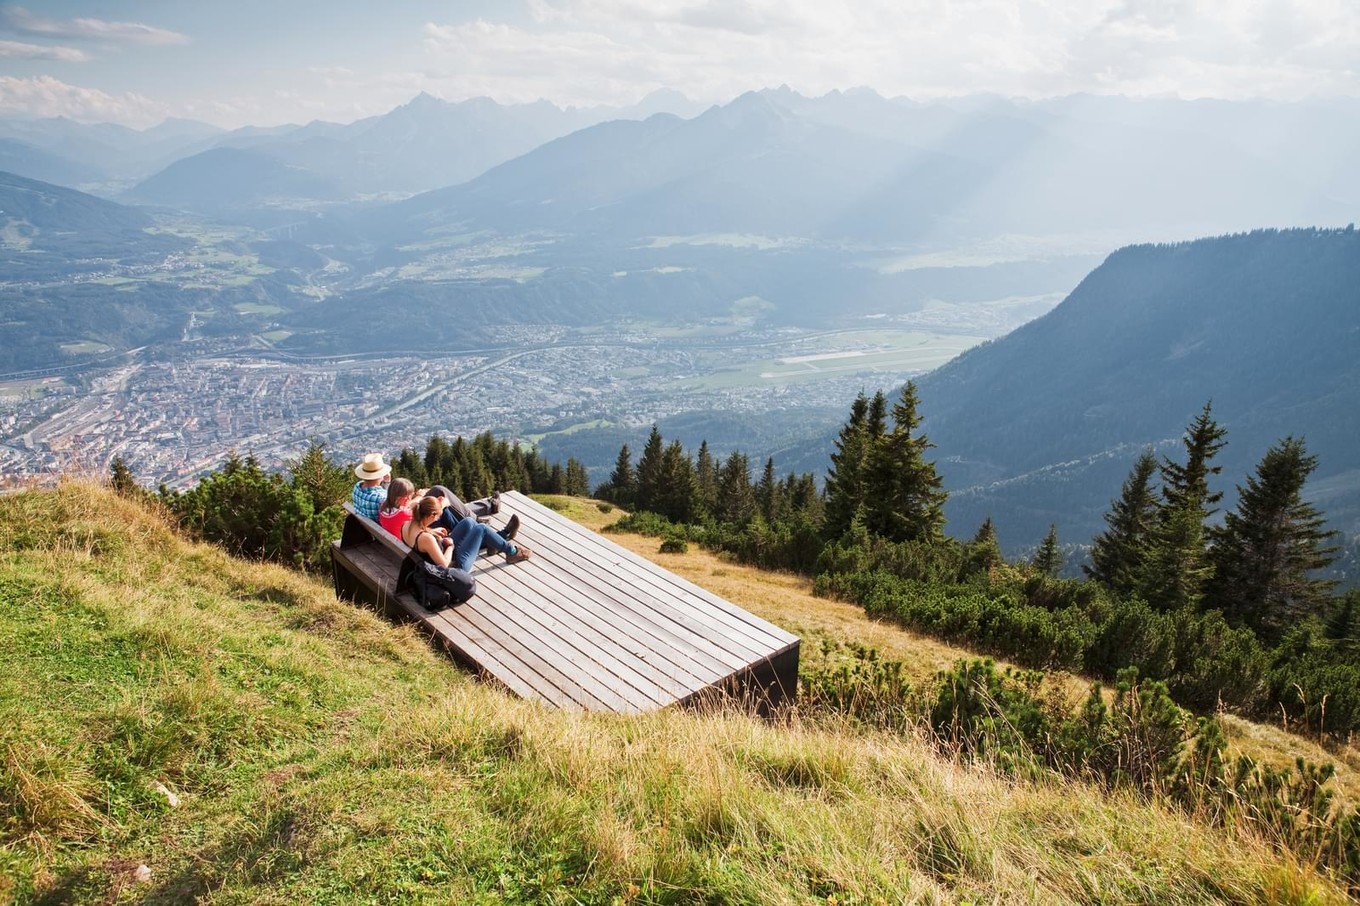 Смотровая в австрийских Альпах ландшафта, города, посетителей, северу, подчеркнули, площадка, Смотровая, пейзажей, горных, впечатляющих, впечатления, добавляя, альпийского, элементы, яркие, жесты, архитекторы, кажется, дизайнерские, небольшие